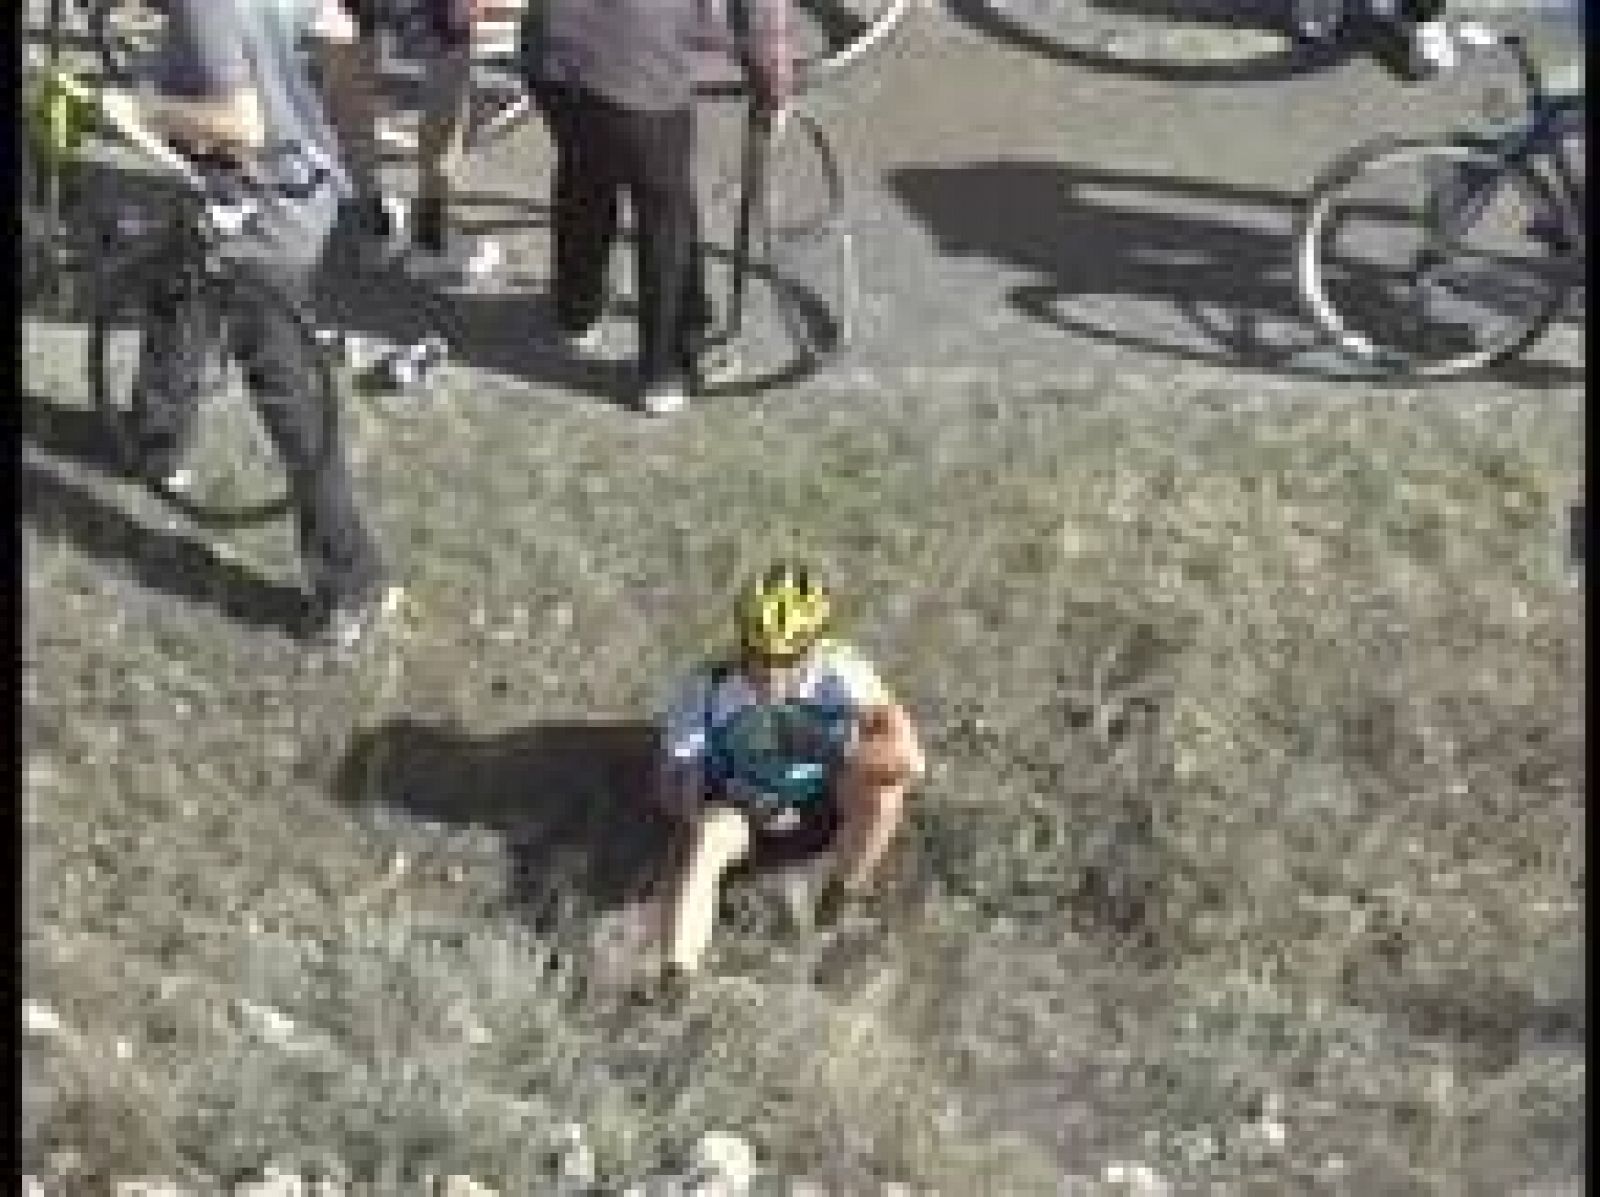 Lance Armstrong se vio involucrado en una caída y se llevó la peor parte: fractura en la clavícula y un mes de baja que le aleja del Giro y de llegar en forma al Tour